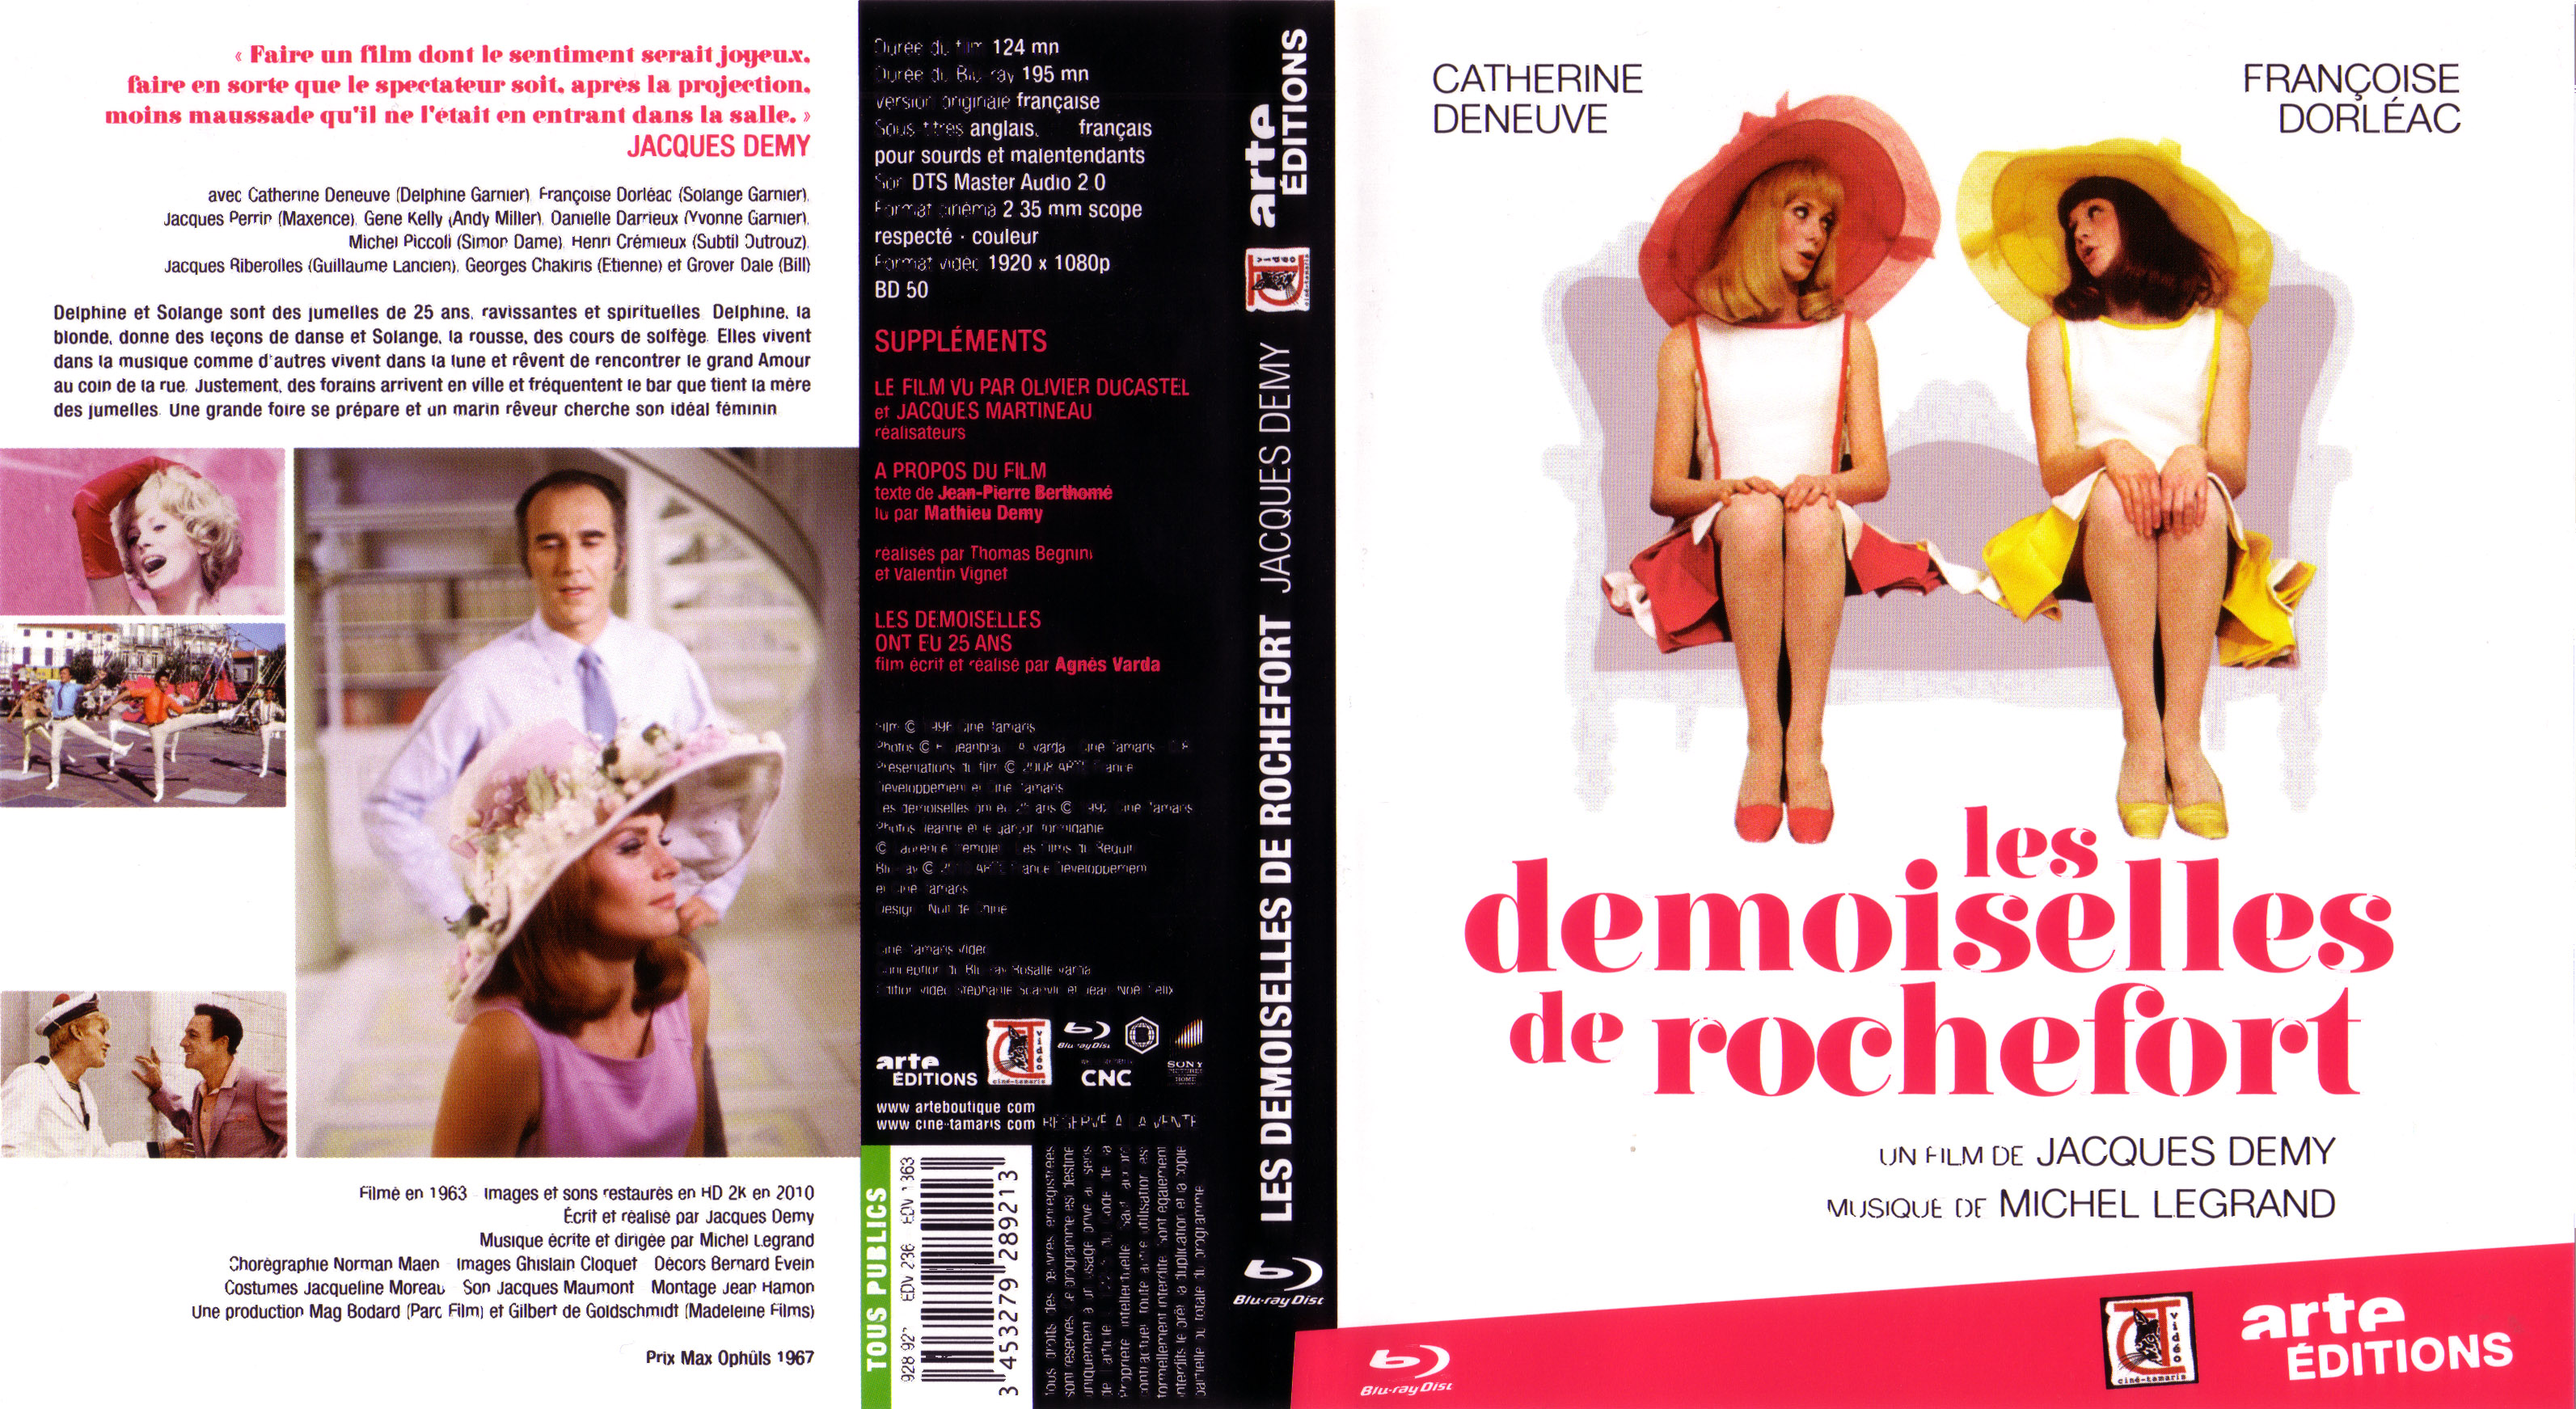 Jaquette DVD Les demoiselles de rochefort (BLU-RAY)